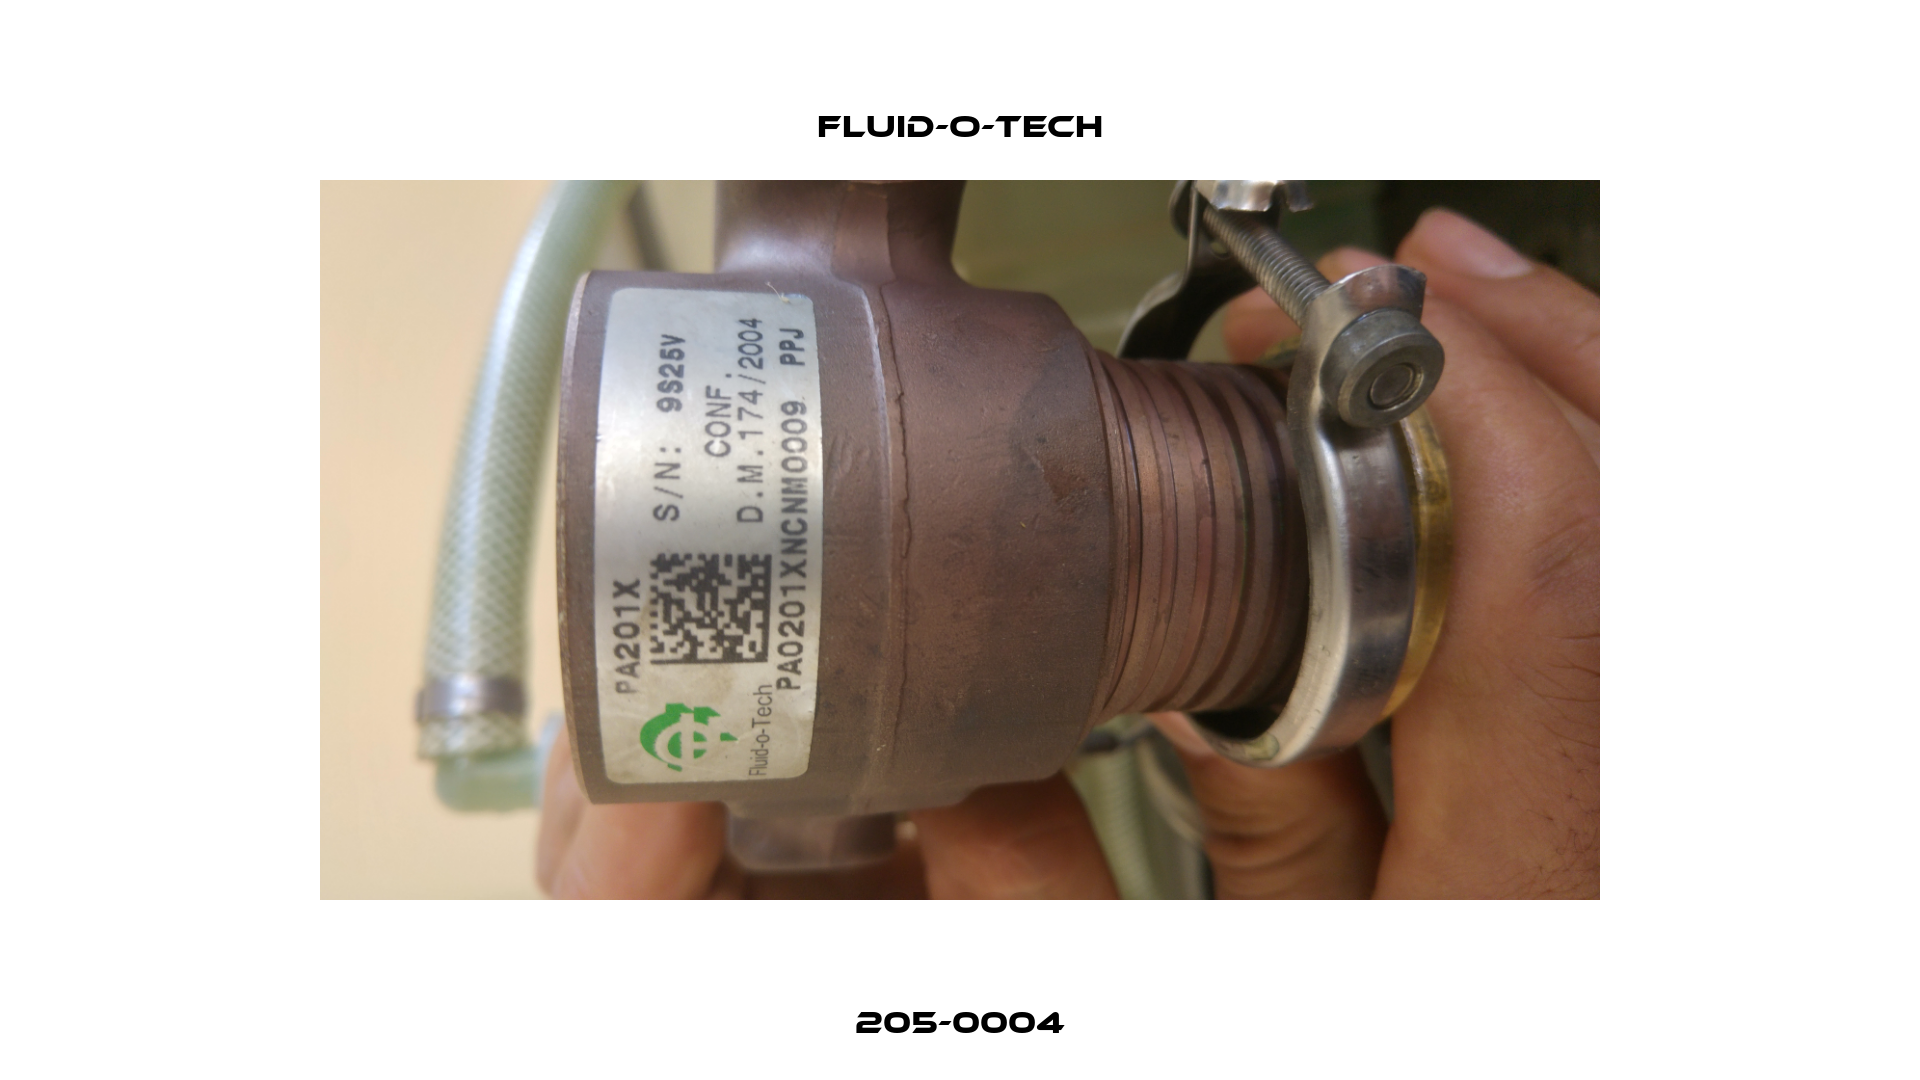 205-0004 Fluid-O-Tech